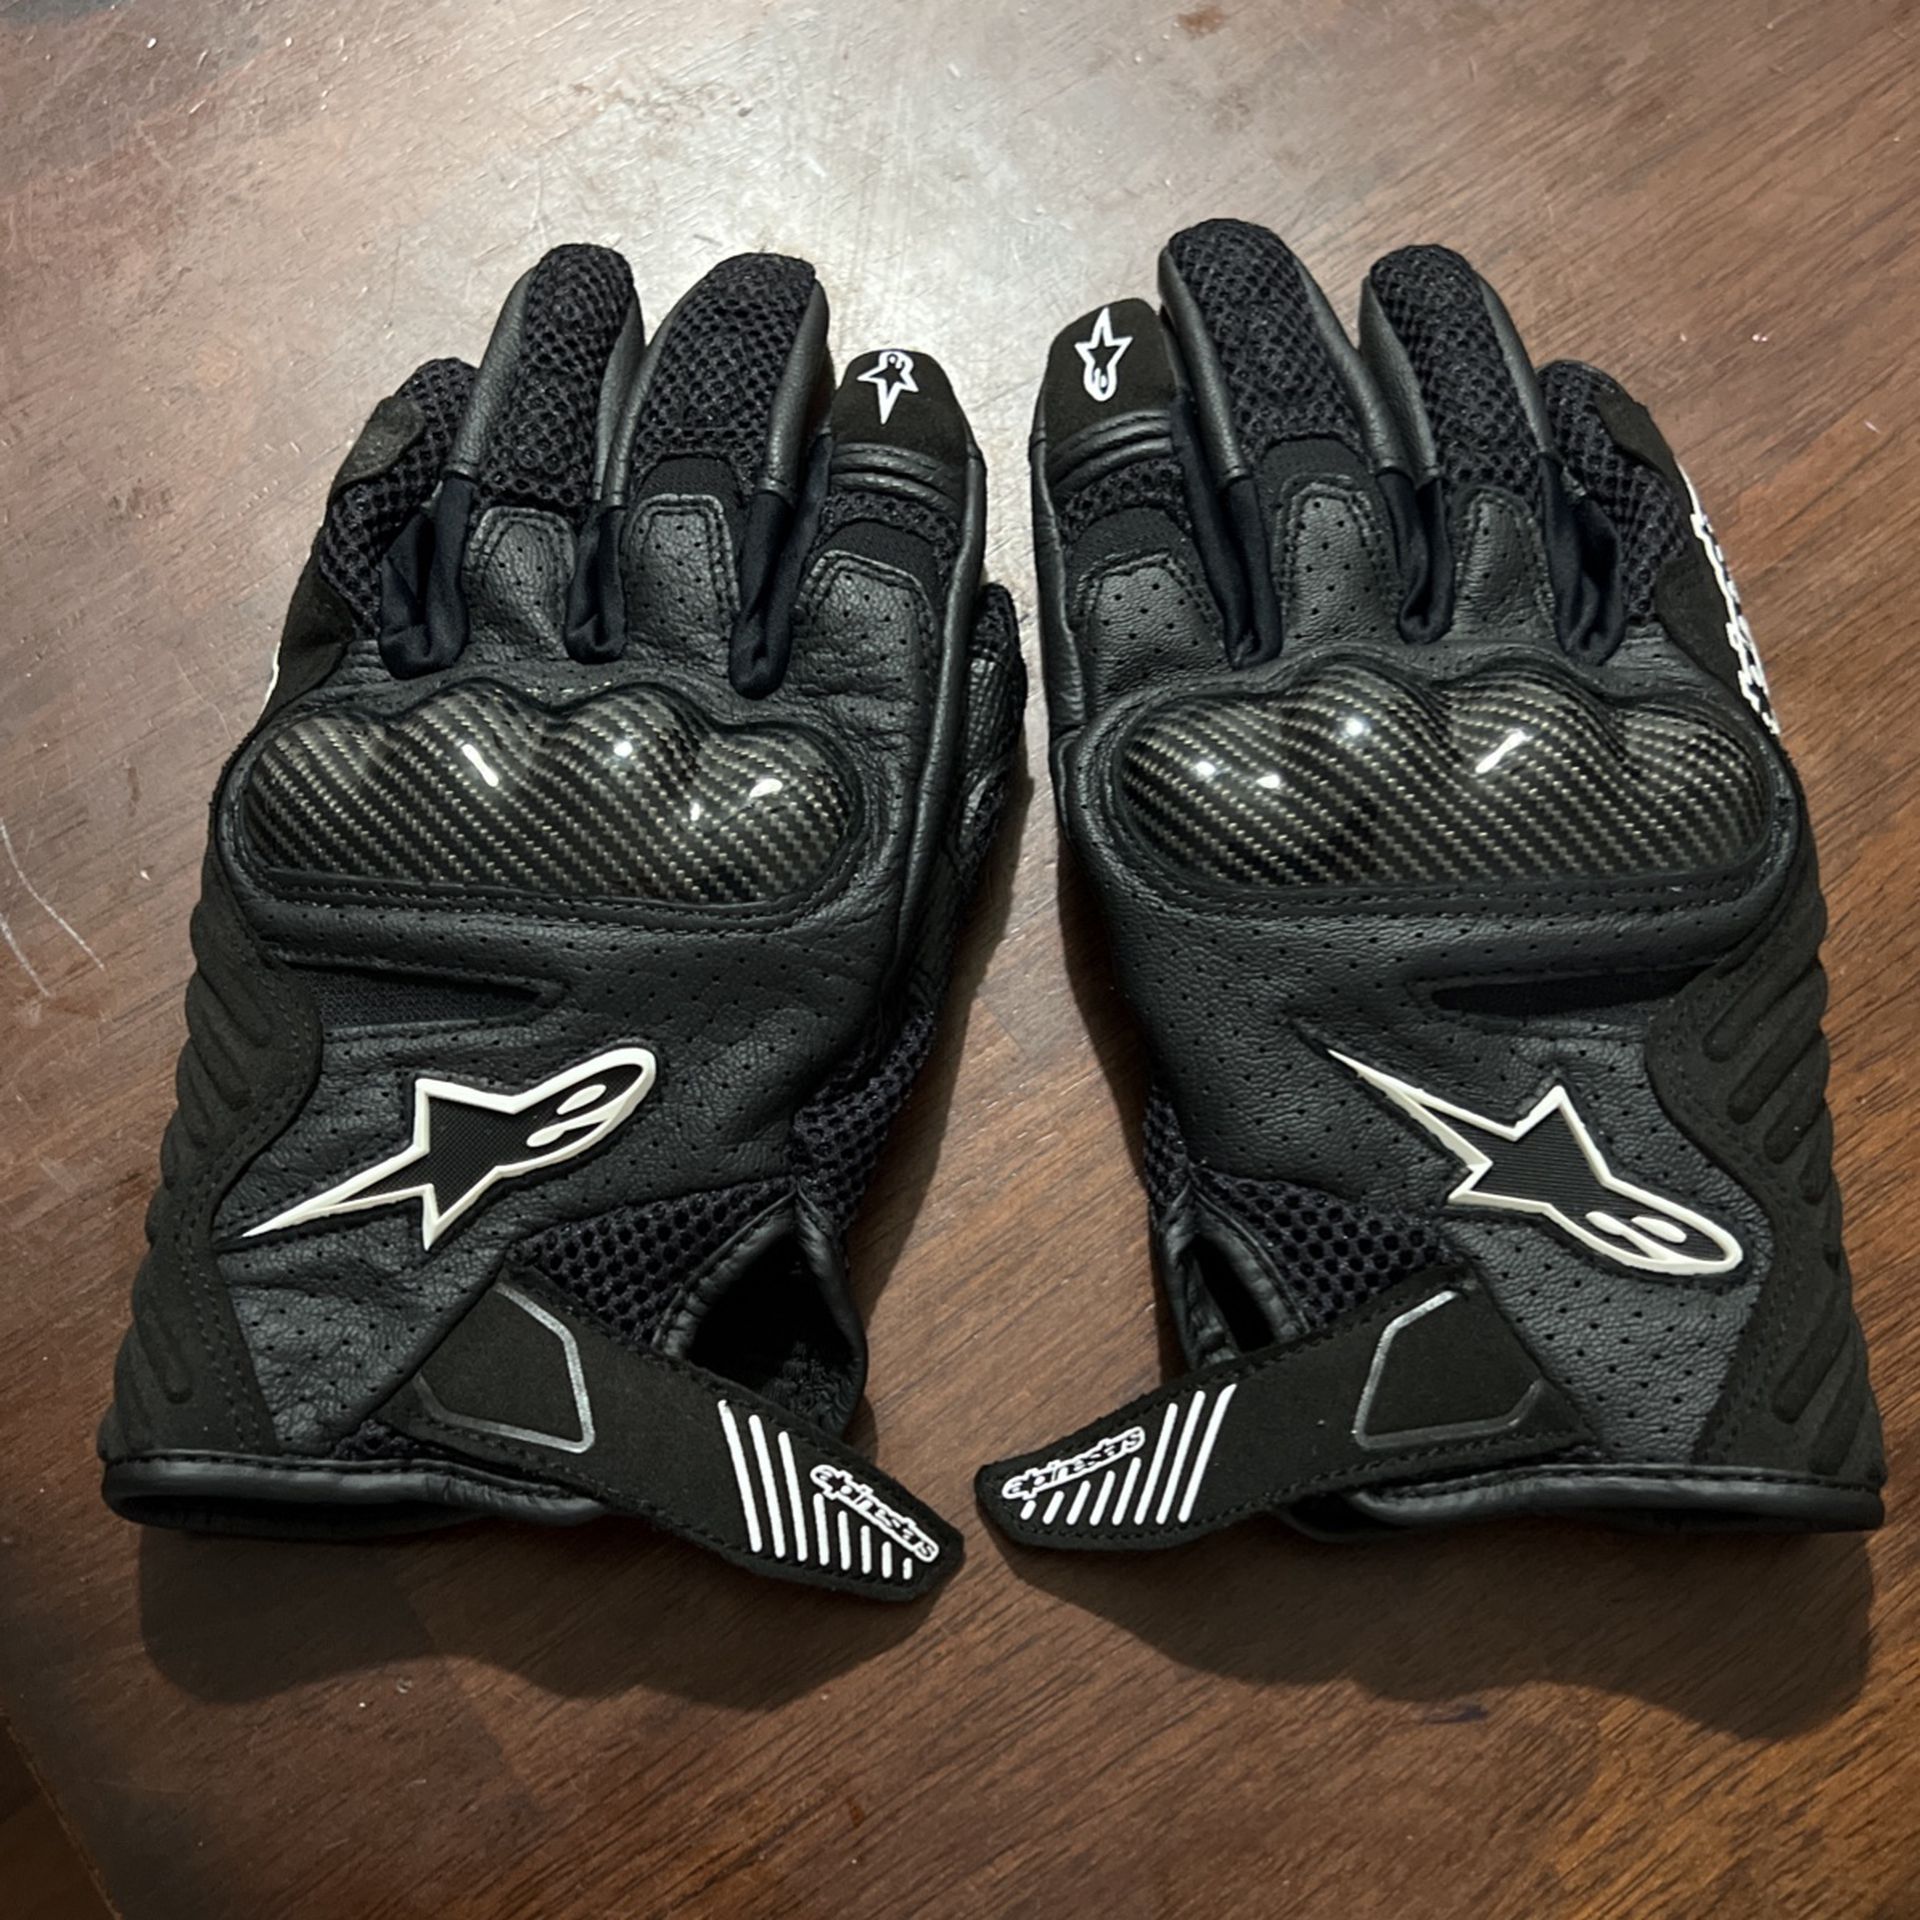 Alpine Stars Gloves 